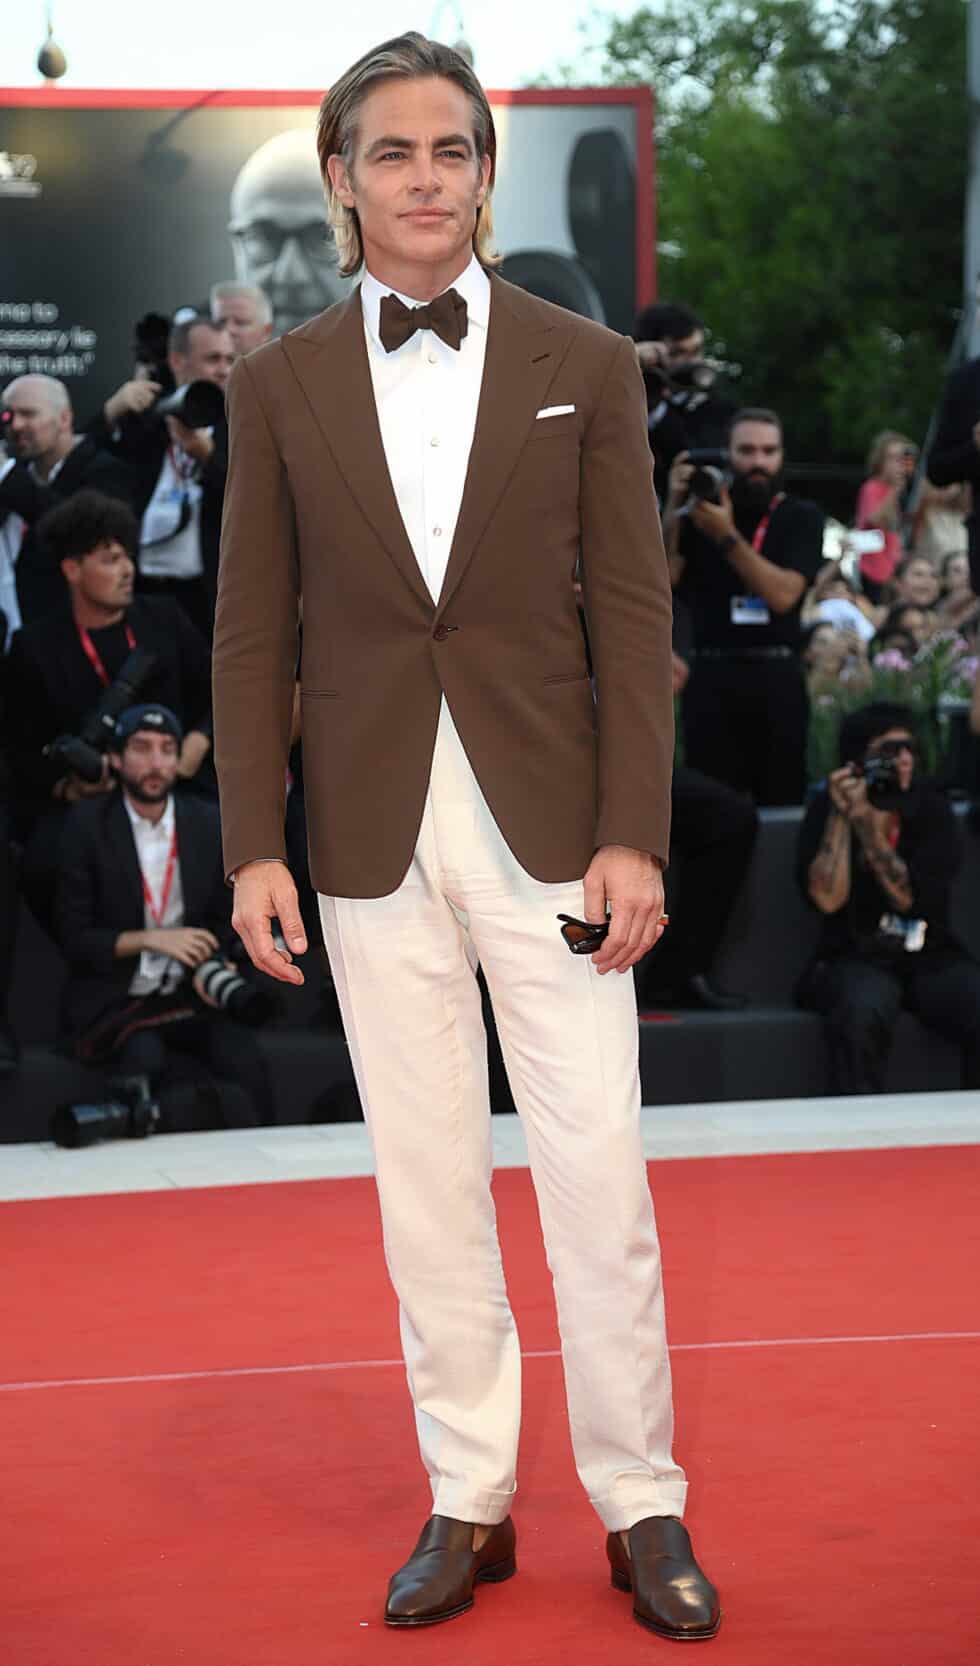 Chris Pine, actor de "Don't Worry Darling", con un traje marrón en la alfombra roja del Festival de Venecia 2022